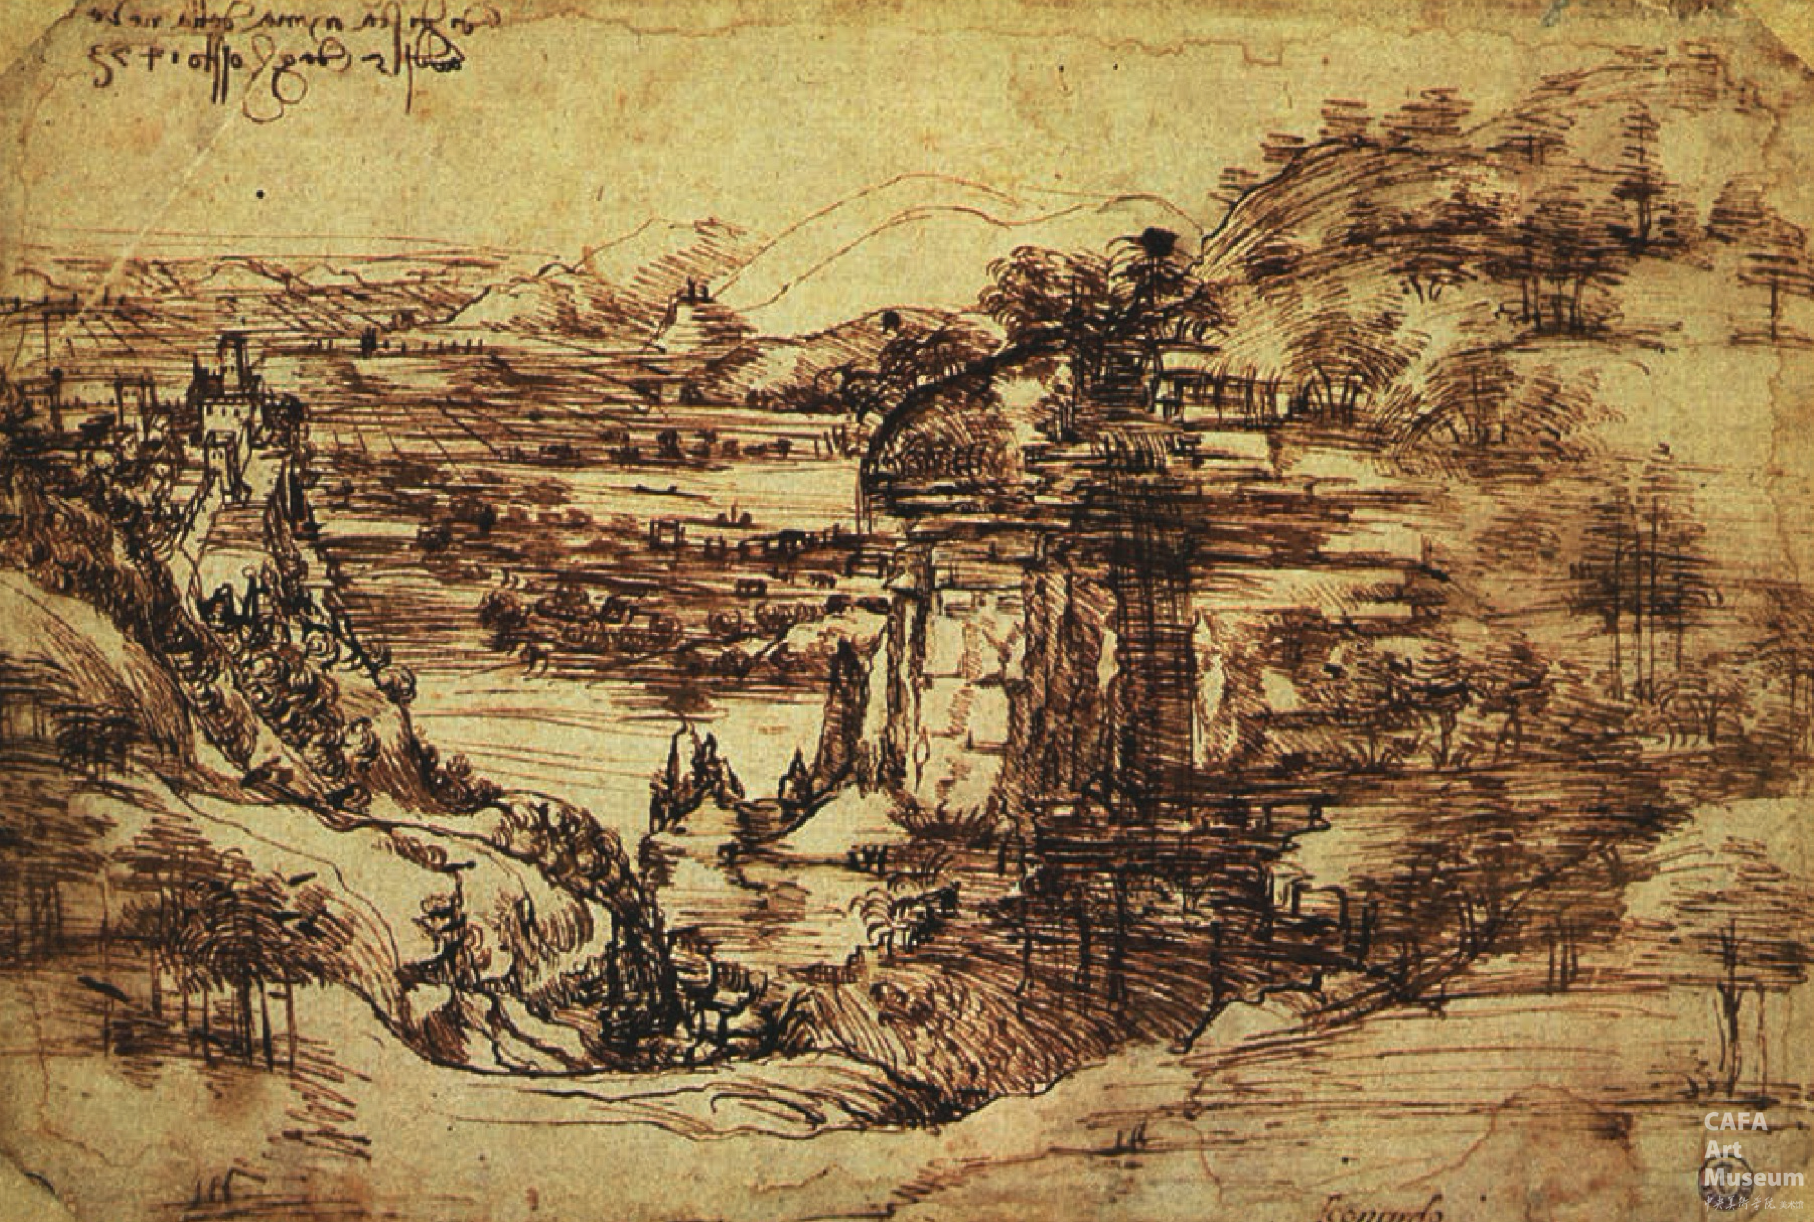 达芬奇,献给冰雪圣母教堂风景画的图纸,1473年,纸上钢笔画,19.6×28.